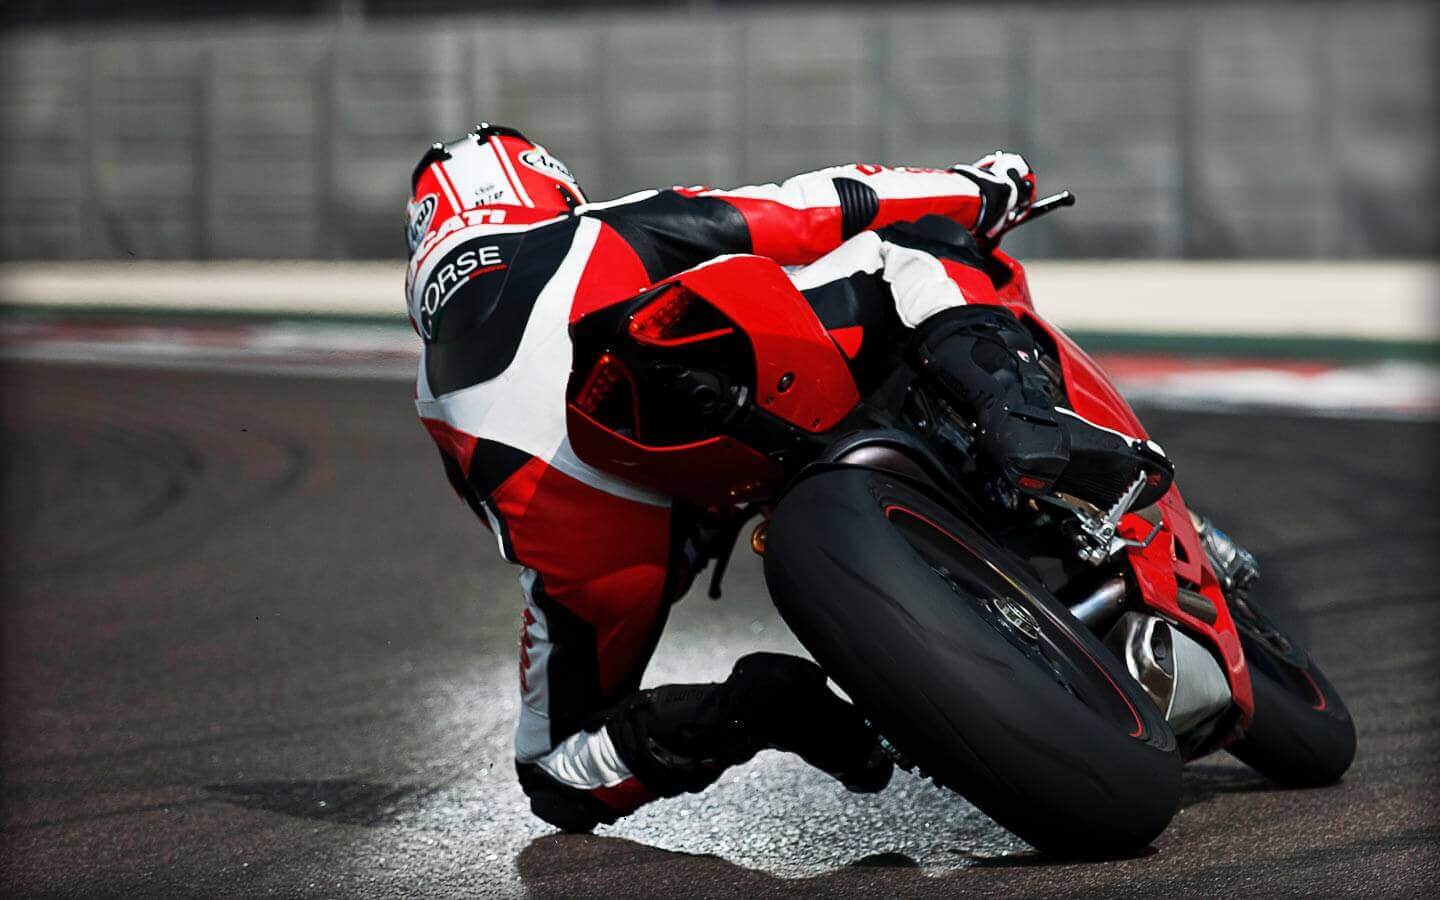 2017 Ducati SuperSport